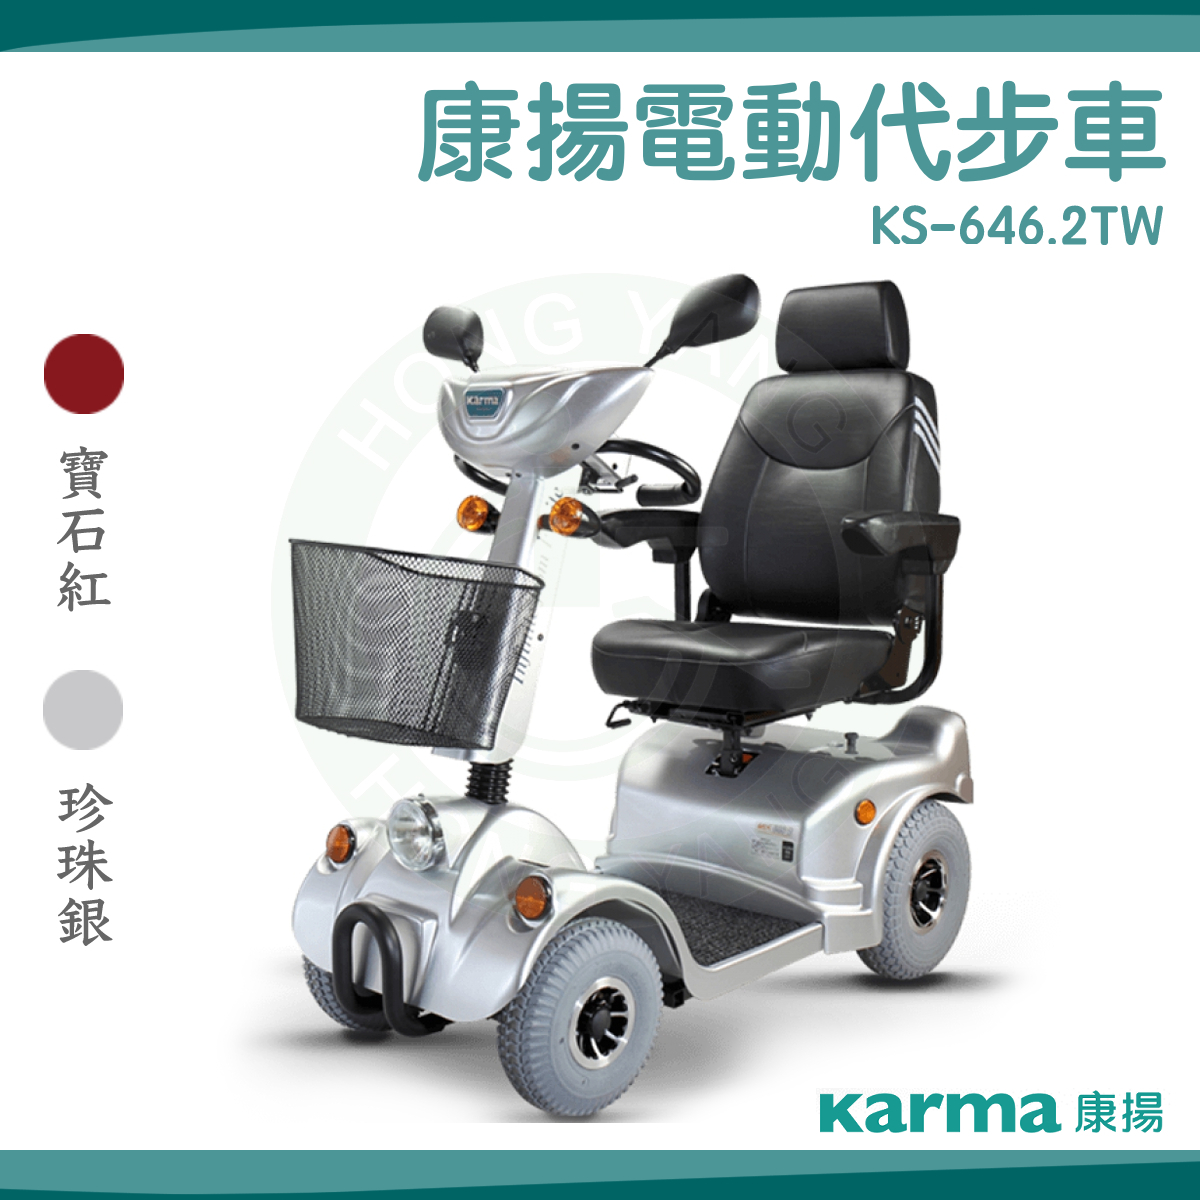 康揚電動代步車KS-646.2 電動代步車電動車KS-646.2TW – 宏陽復健器材中心